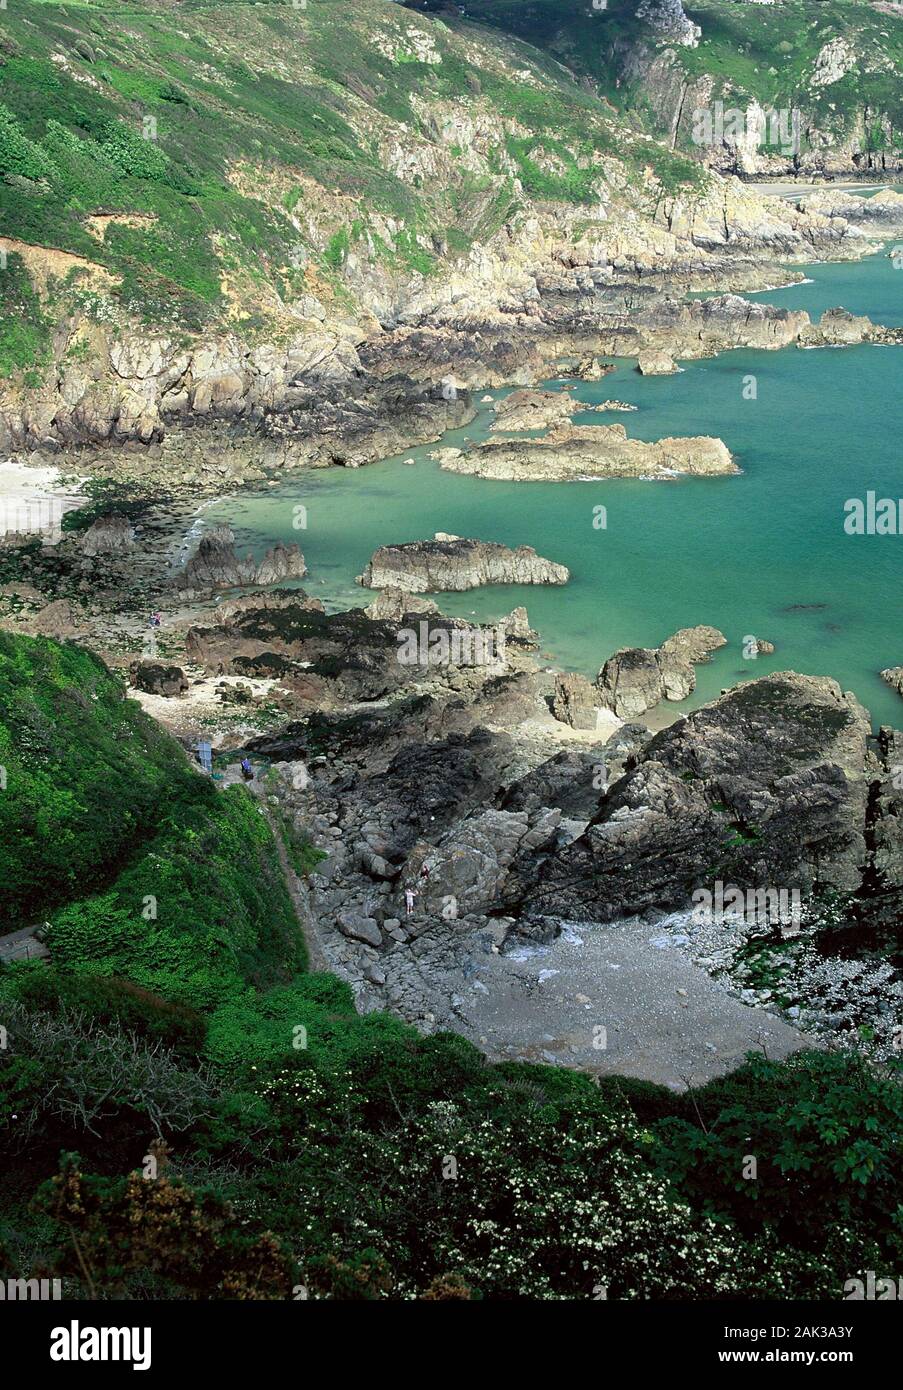 Vista sulla costa rocciosa del Moulin Huet Bay nei pressi di San Martino a sud dell'isola di Guernsey. Guernsey è una delle cinque isole Normandes Foto Stock